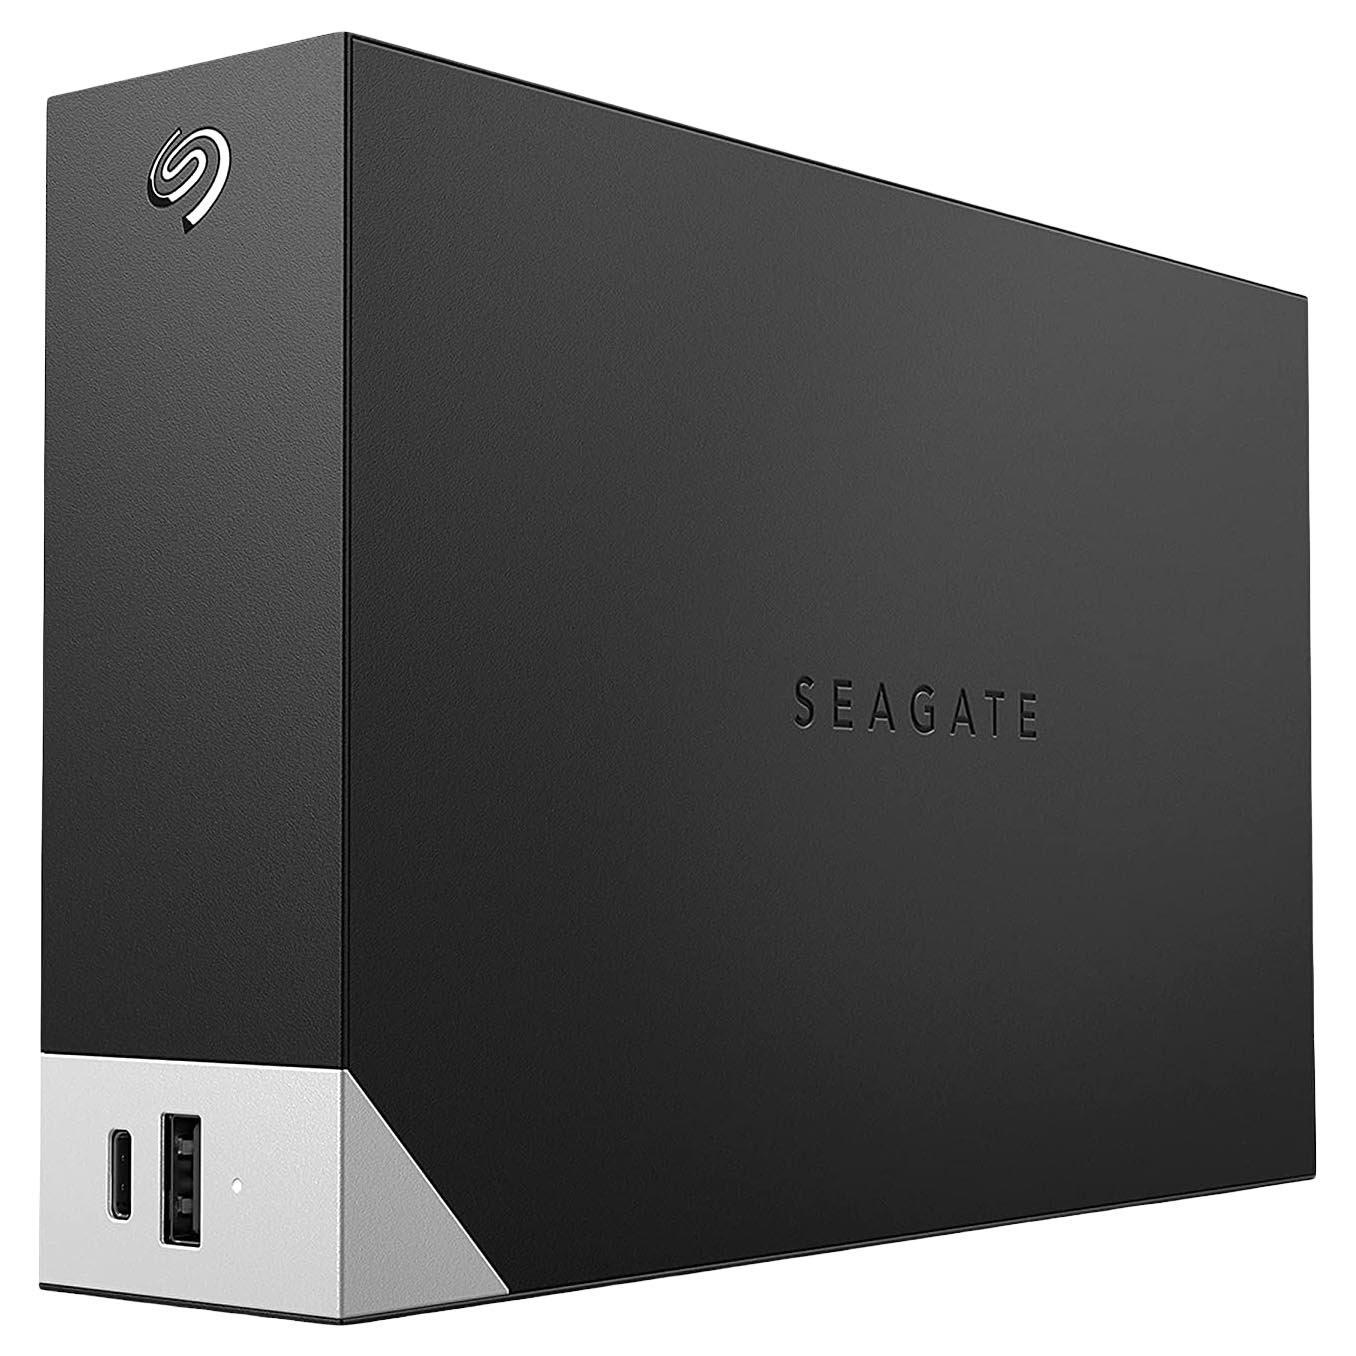 Внешний жесткий диск Seagate One Touch, STLC18000400, 18Тб, 3.5 внешний жесткий диск 2 5 5 tb usb 3 0 seagate one touch серебристый